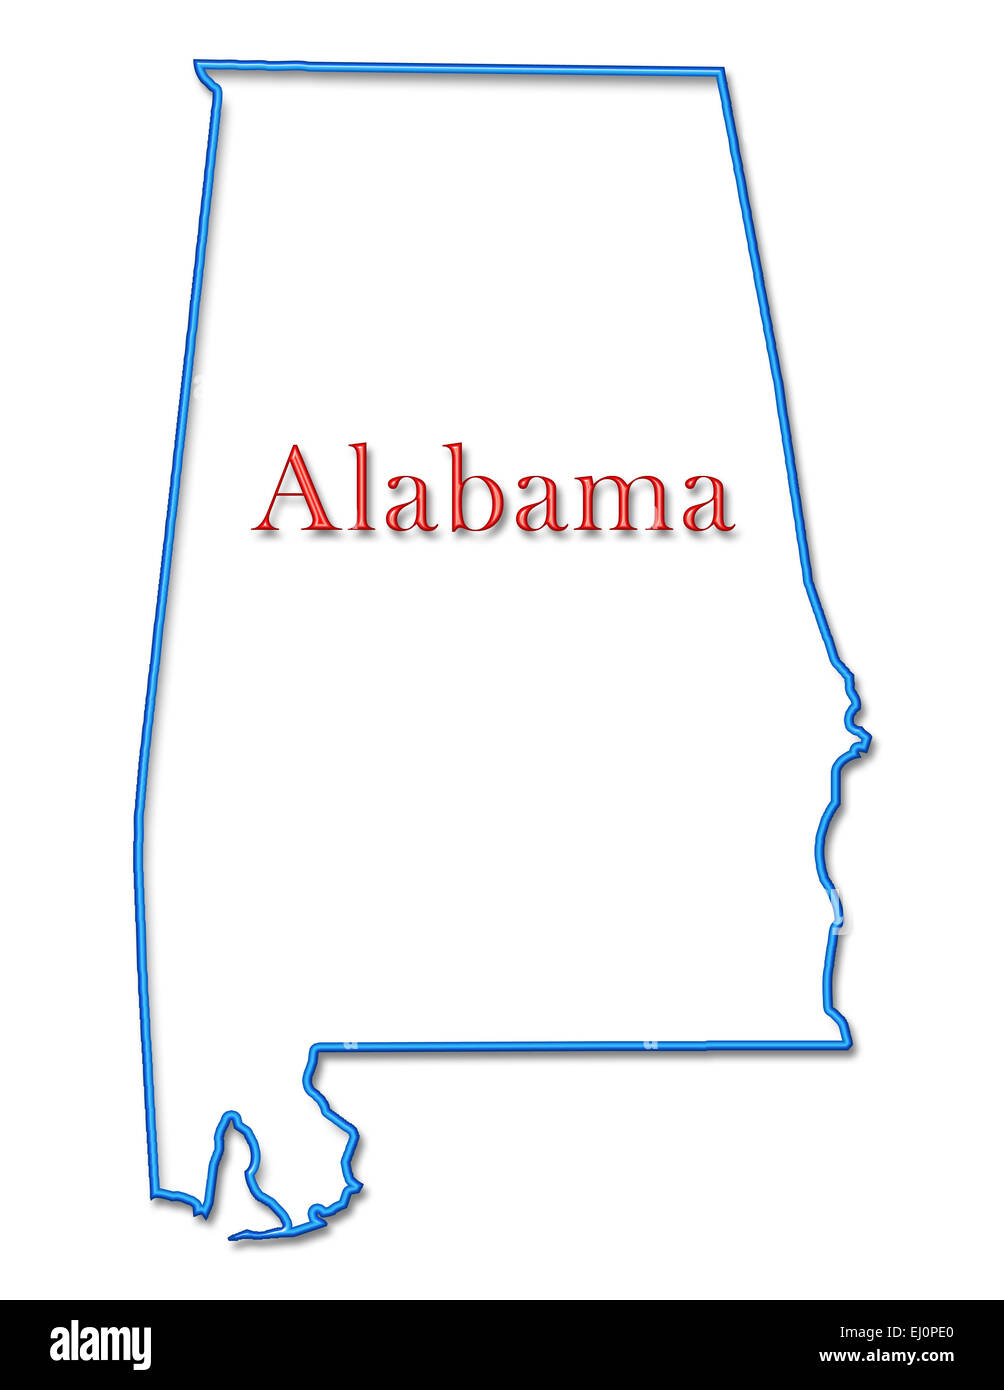 Alabama-Karte mit Neon blau, Gliederung und roter Text Stockfoto